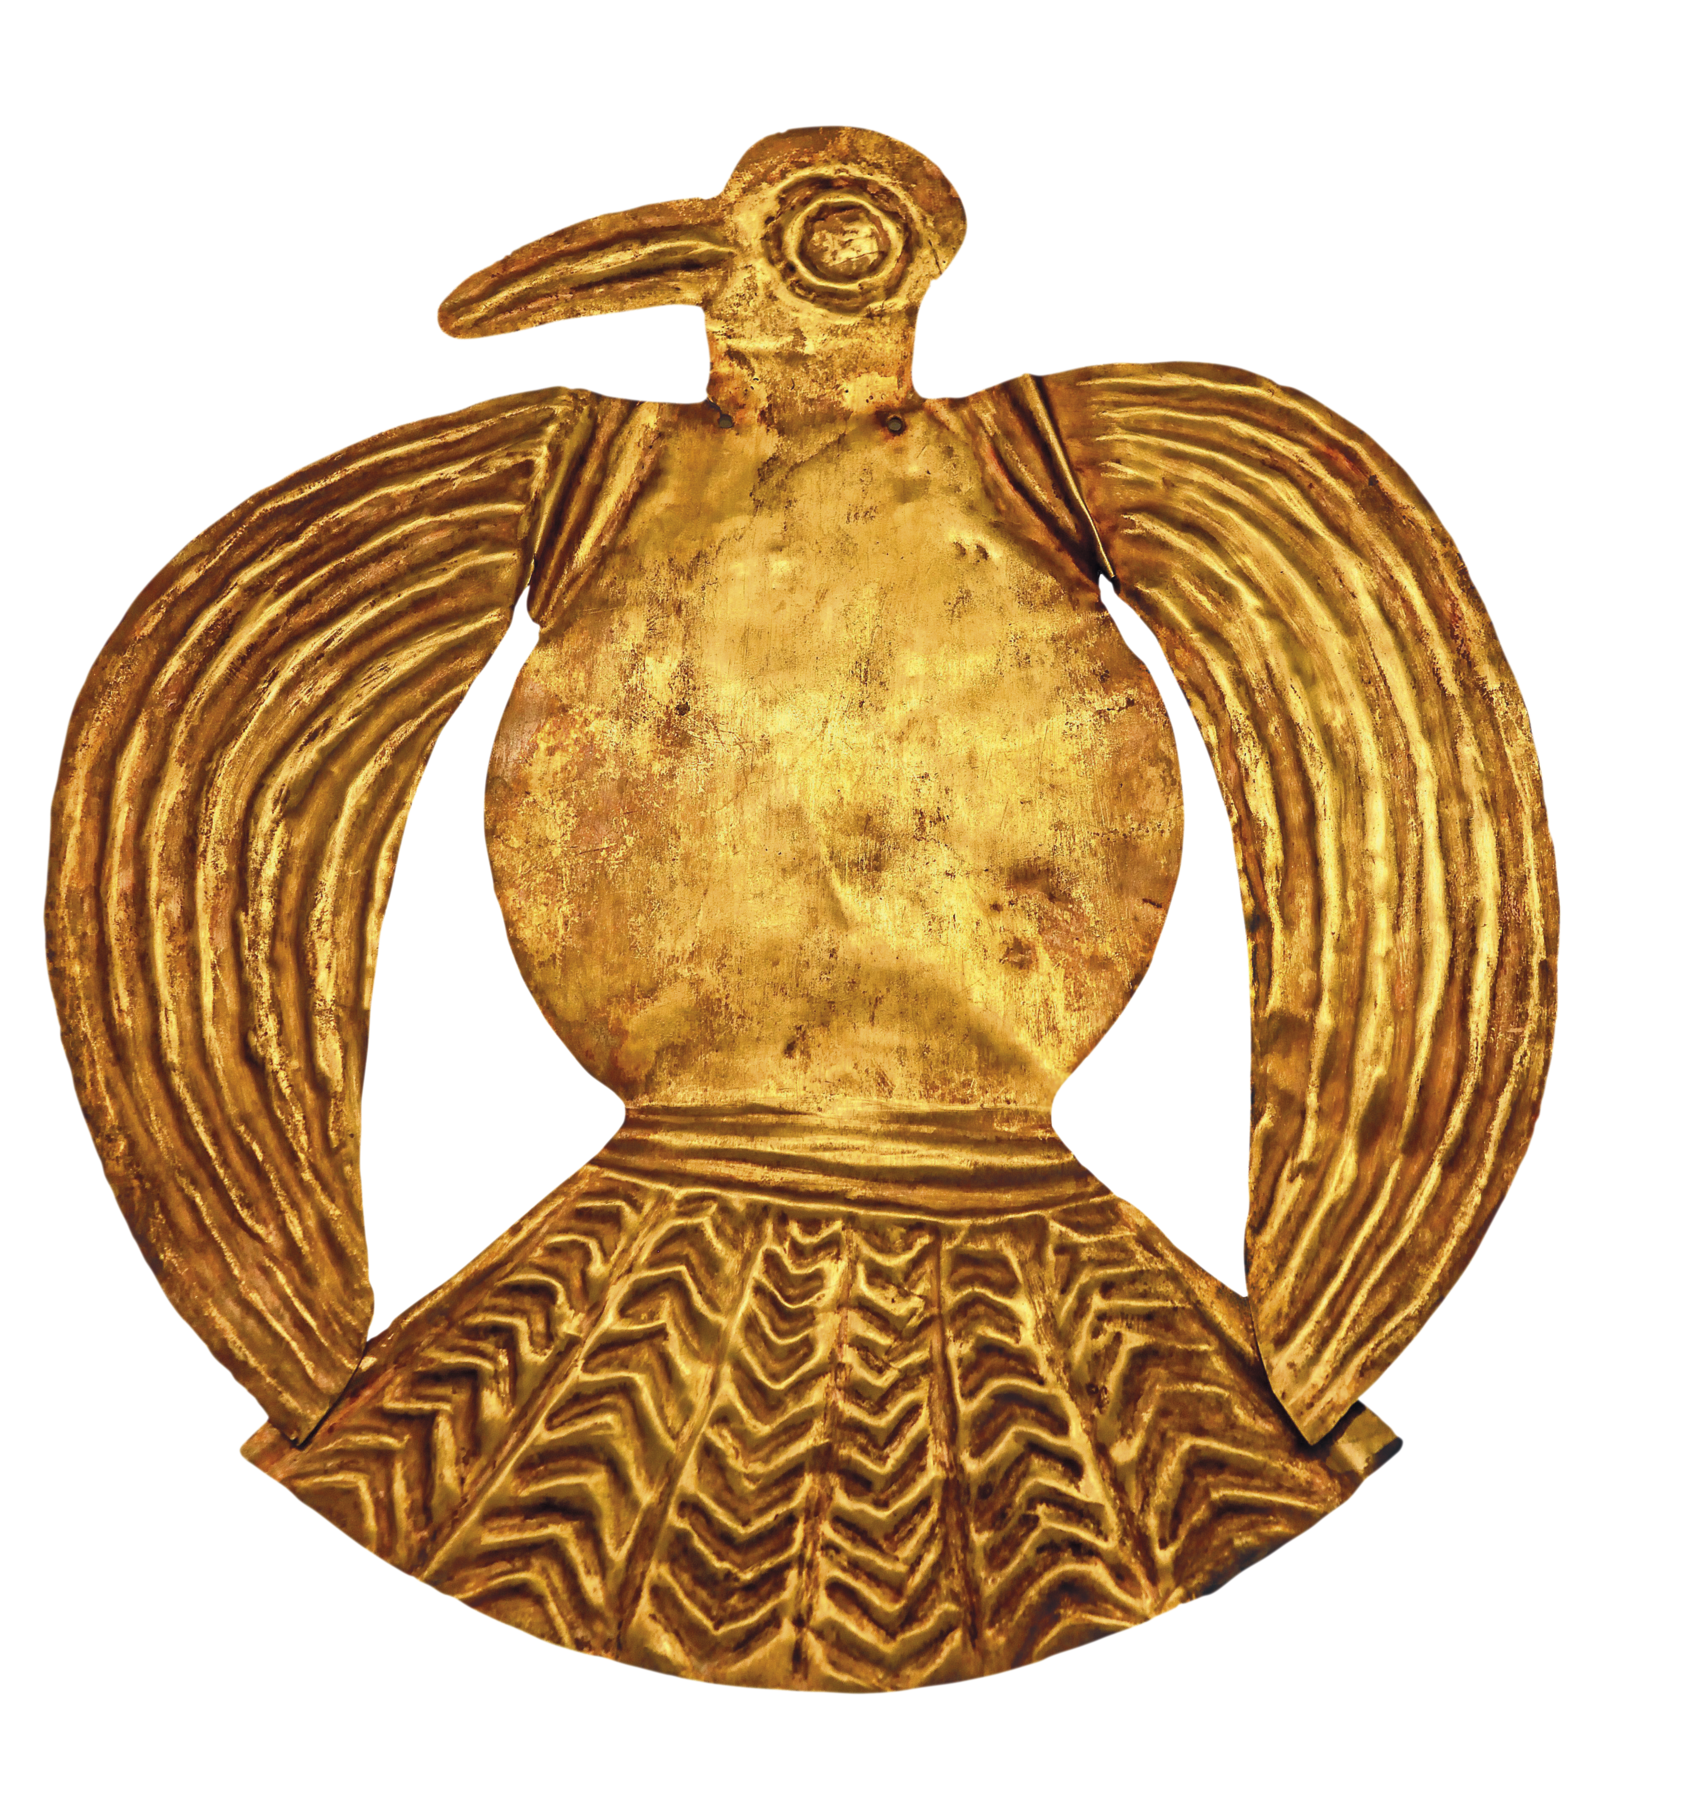 Placa de ouro. Destaque para uma placa dourada em formato de pássaro, com asas circulares e um fino bico na cabeça.